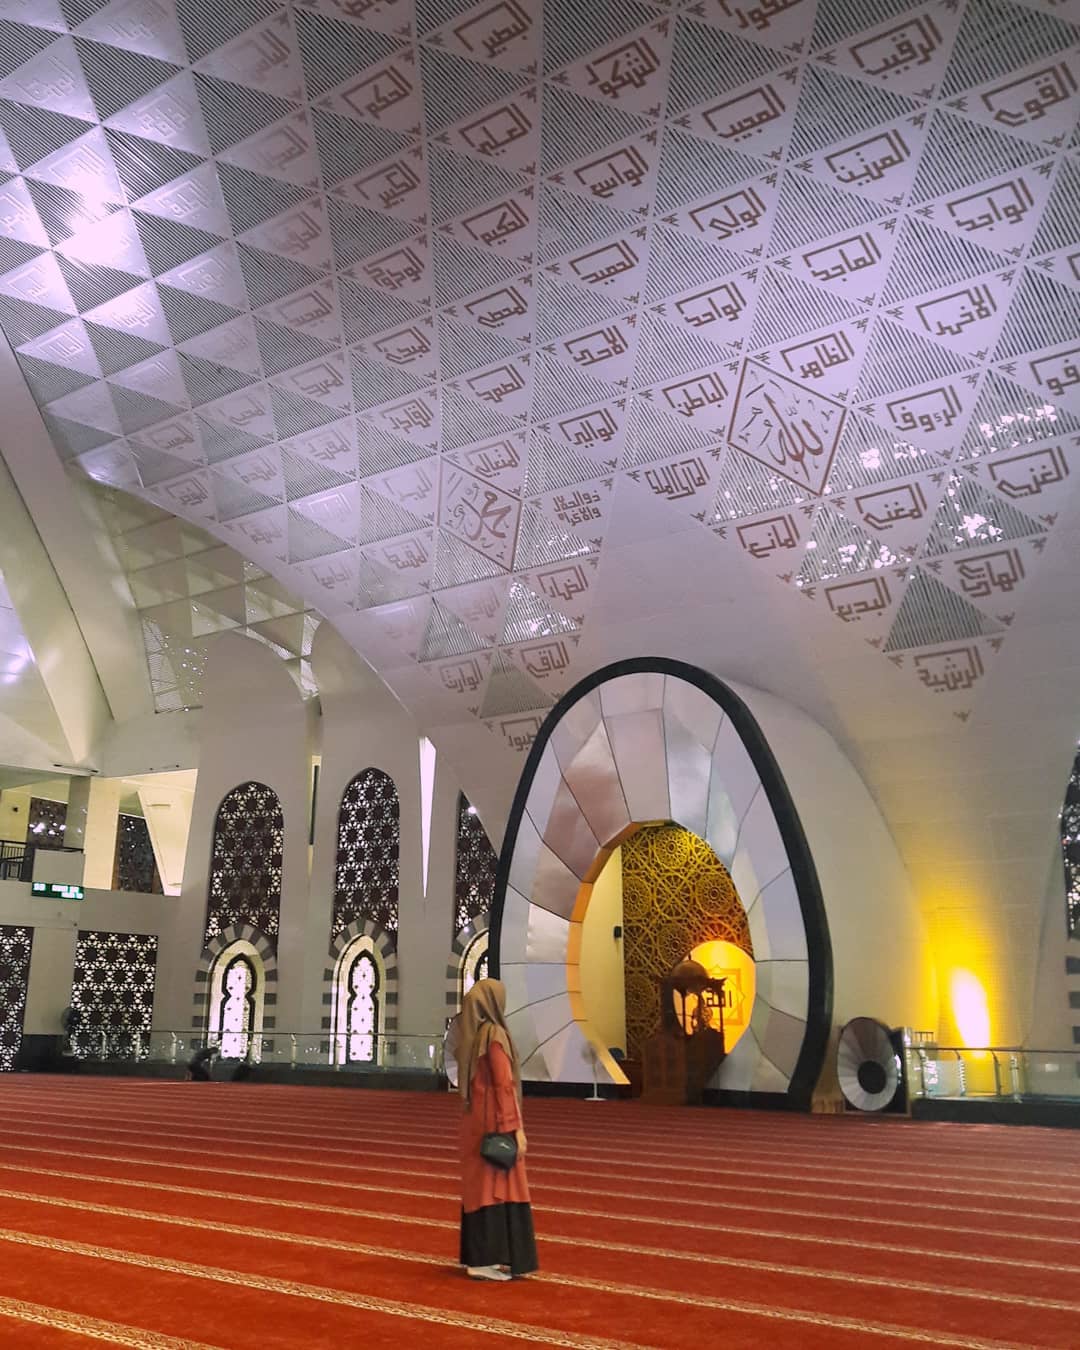 grand mosque of west sumatra interior